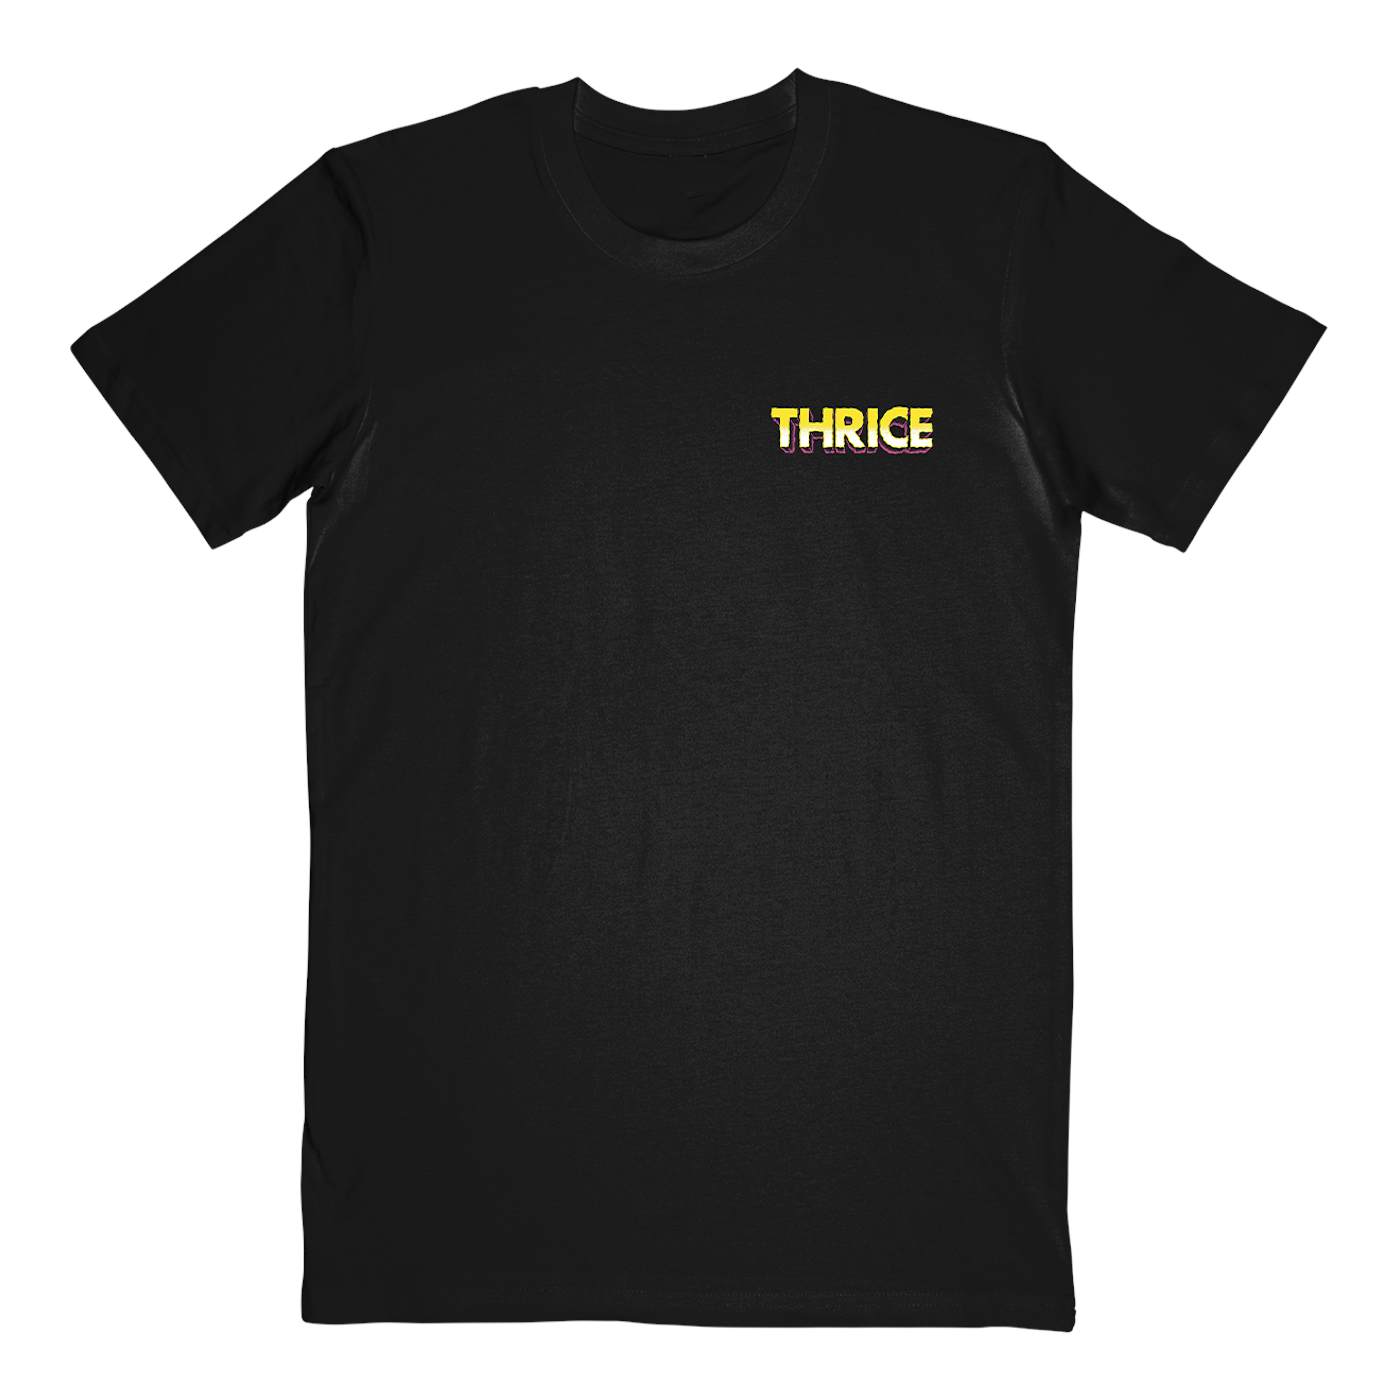 Thrice "Santa Cruz" T-Shirt